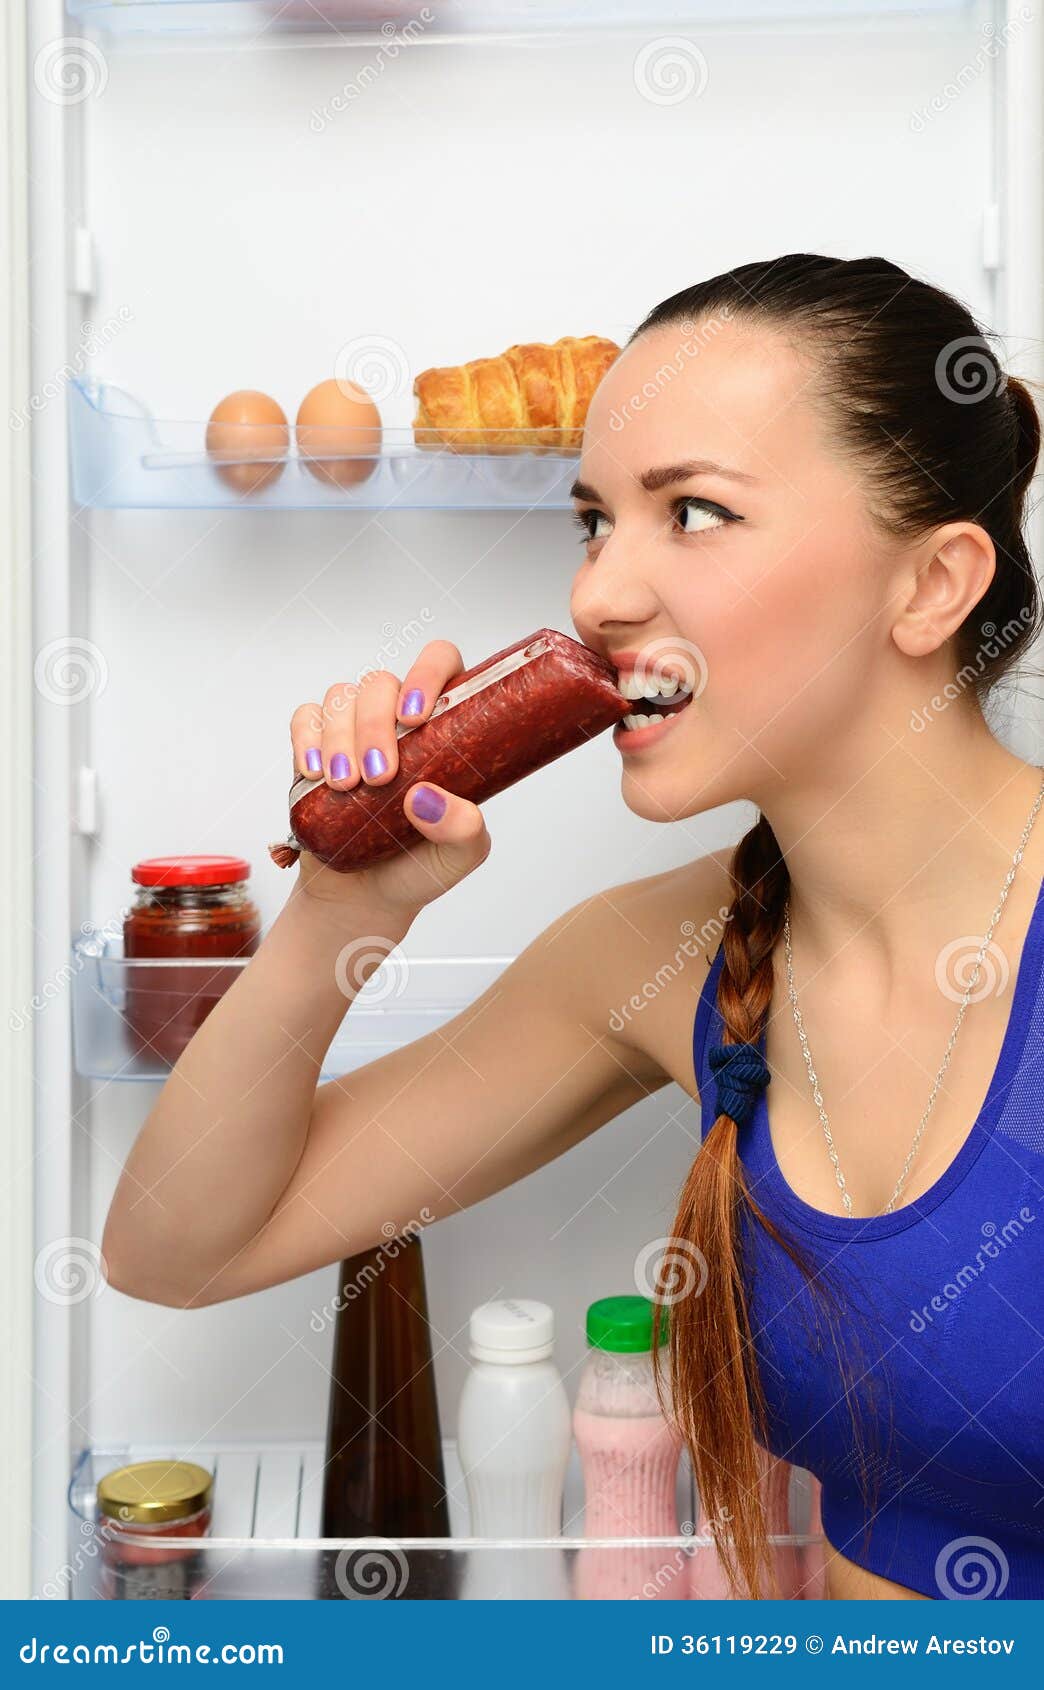 woman eating sausage